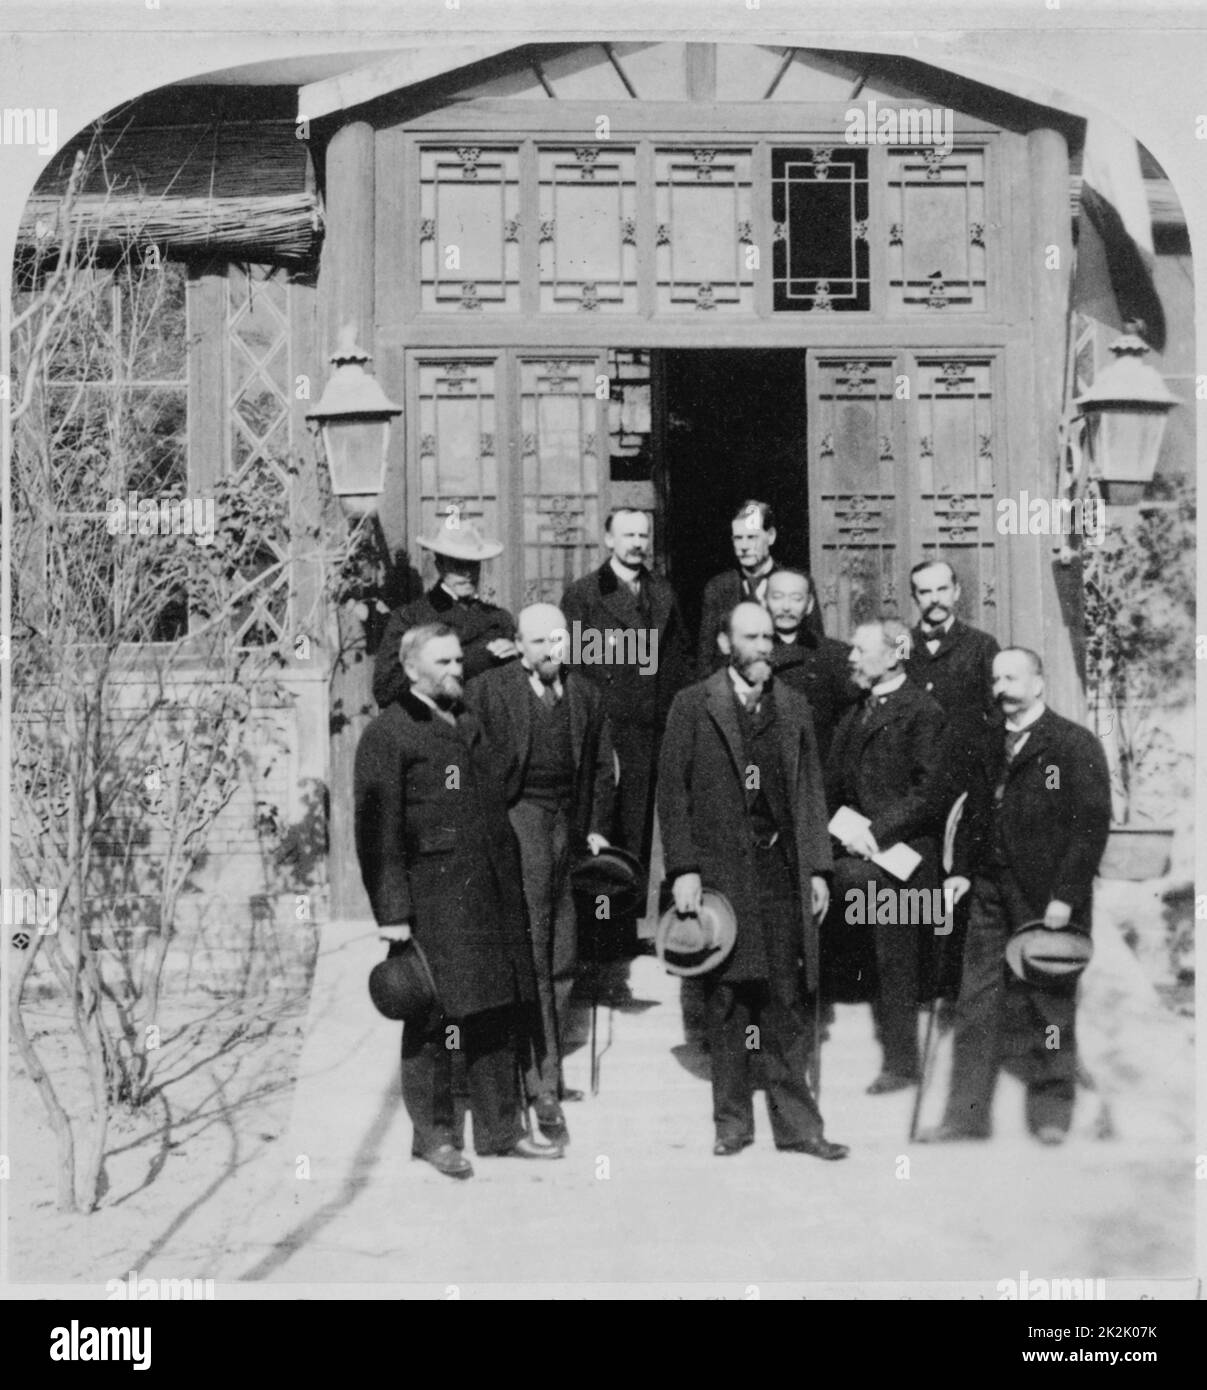 Un groupe de ministres des Affaires étrangères se tenant à l'extérieur de l'entrée de la légation espagnole à Pékin, au cours des négociations avec la Chine. 1900. Banque D'Images